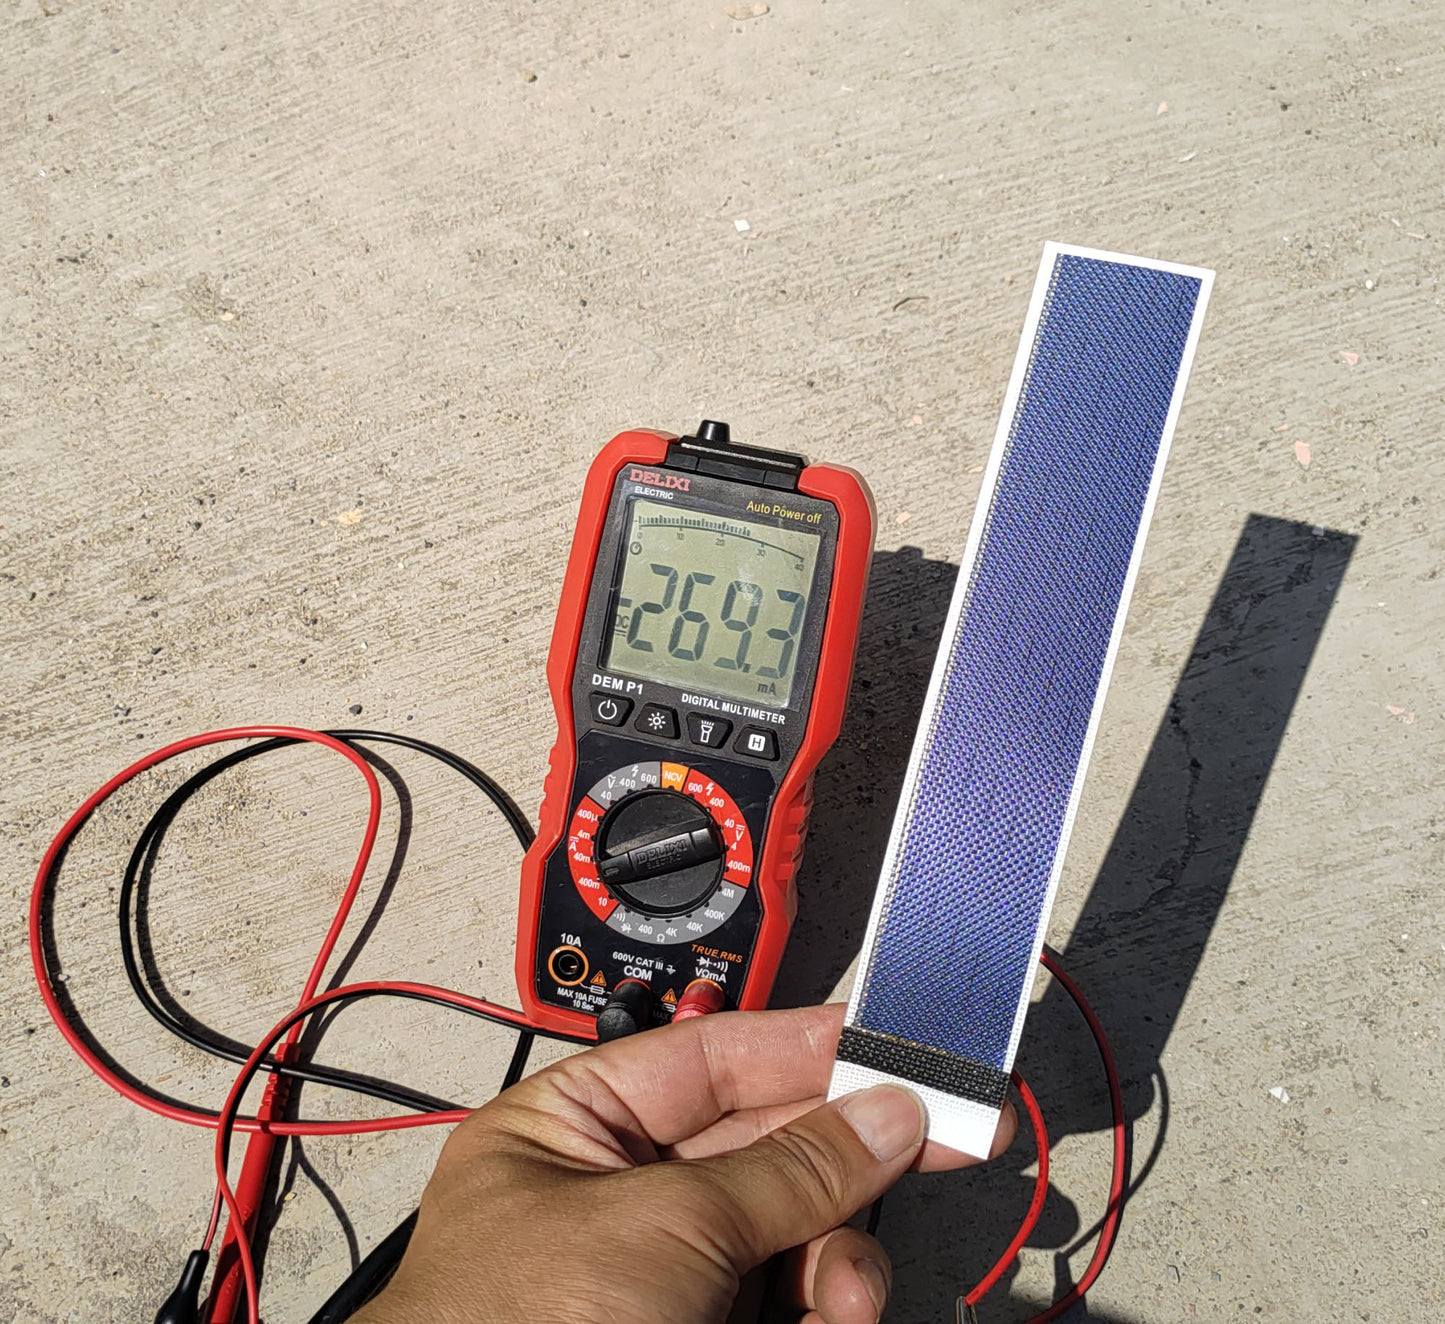 Pannello solare a film sottile per caricabatteria elettronico IoT a bassa potenza Cella solare flessibile Fai da te Mini progetti scientifici sull'energia solare